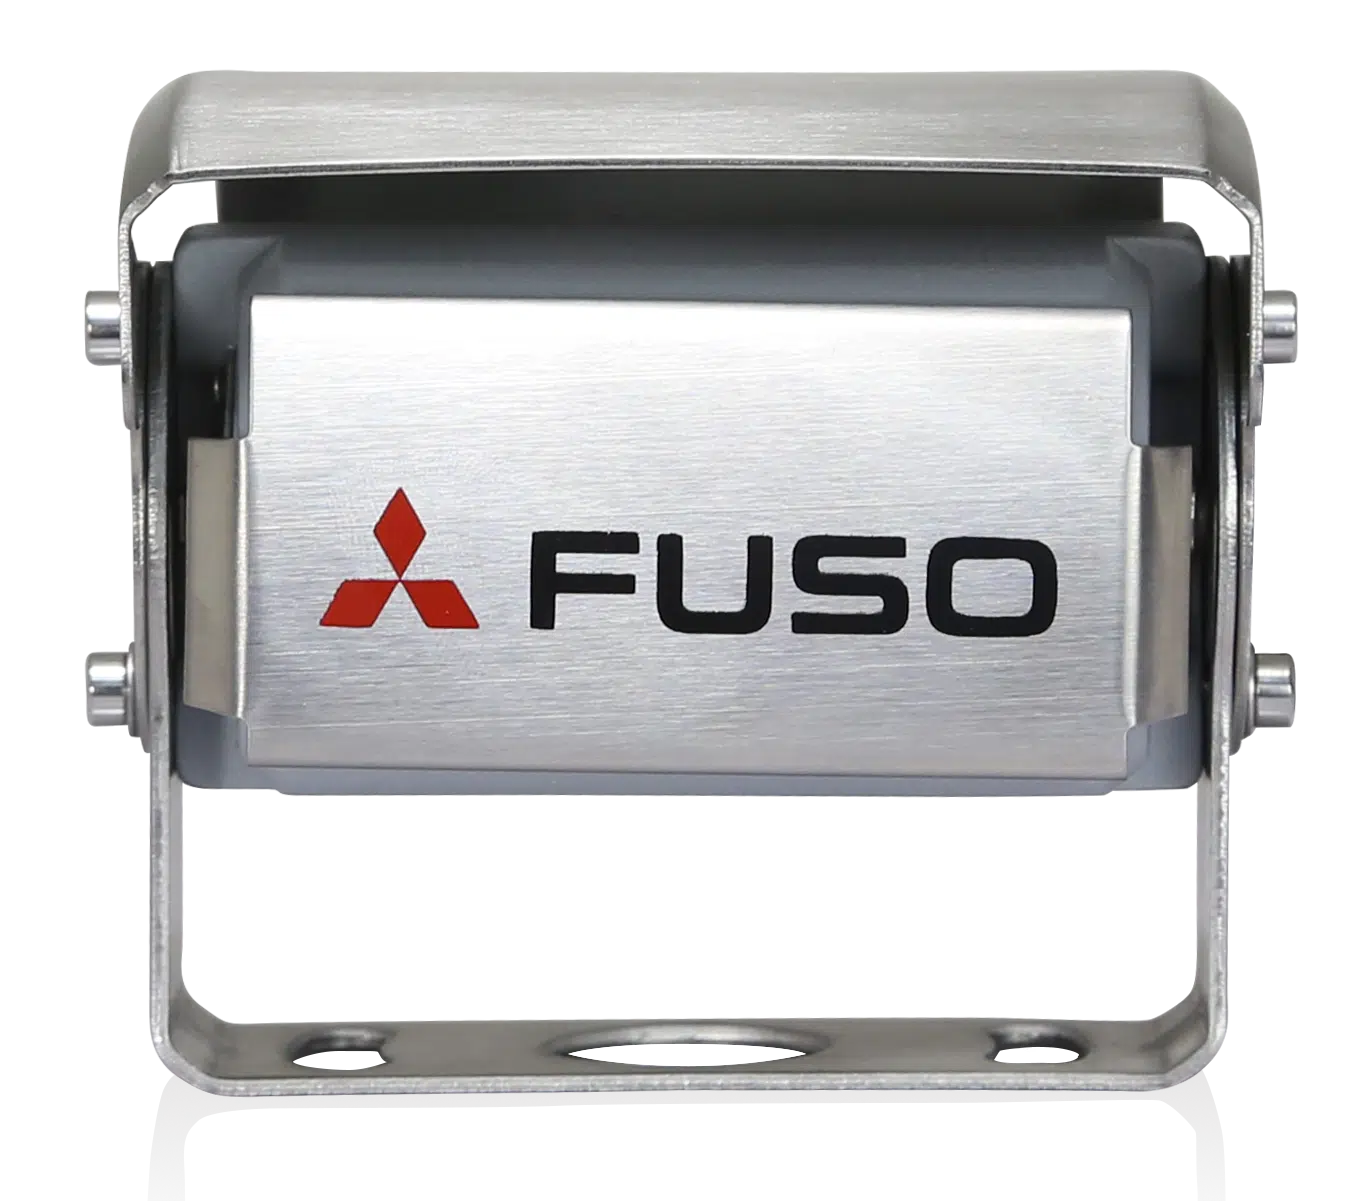 La telecamera di retromarcia FUSO è un prodotto potente che combina i vantaggi della migliore visibilità e della massima sicurezza. È dotato di un microfono integrato che consente di migliorare la percezione dell'area retrostante il veicolo.